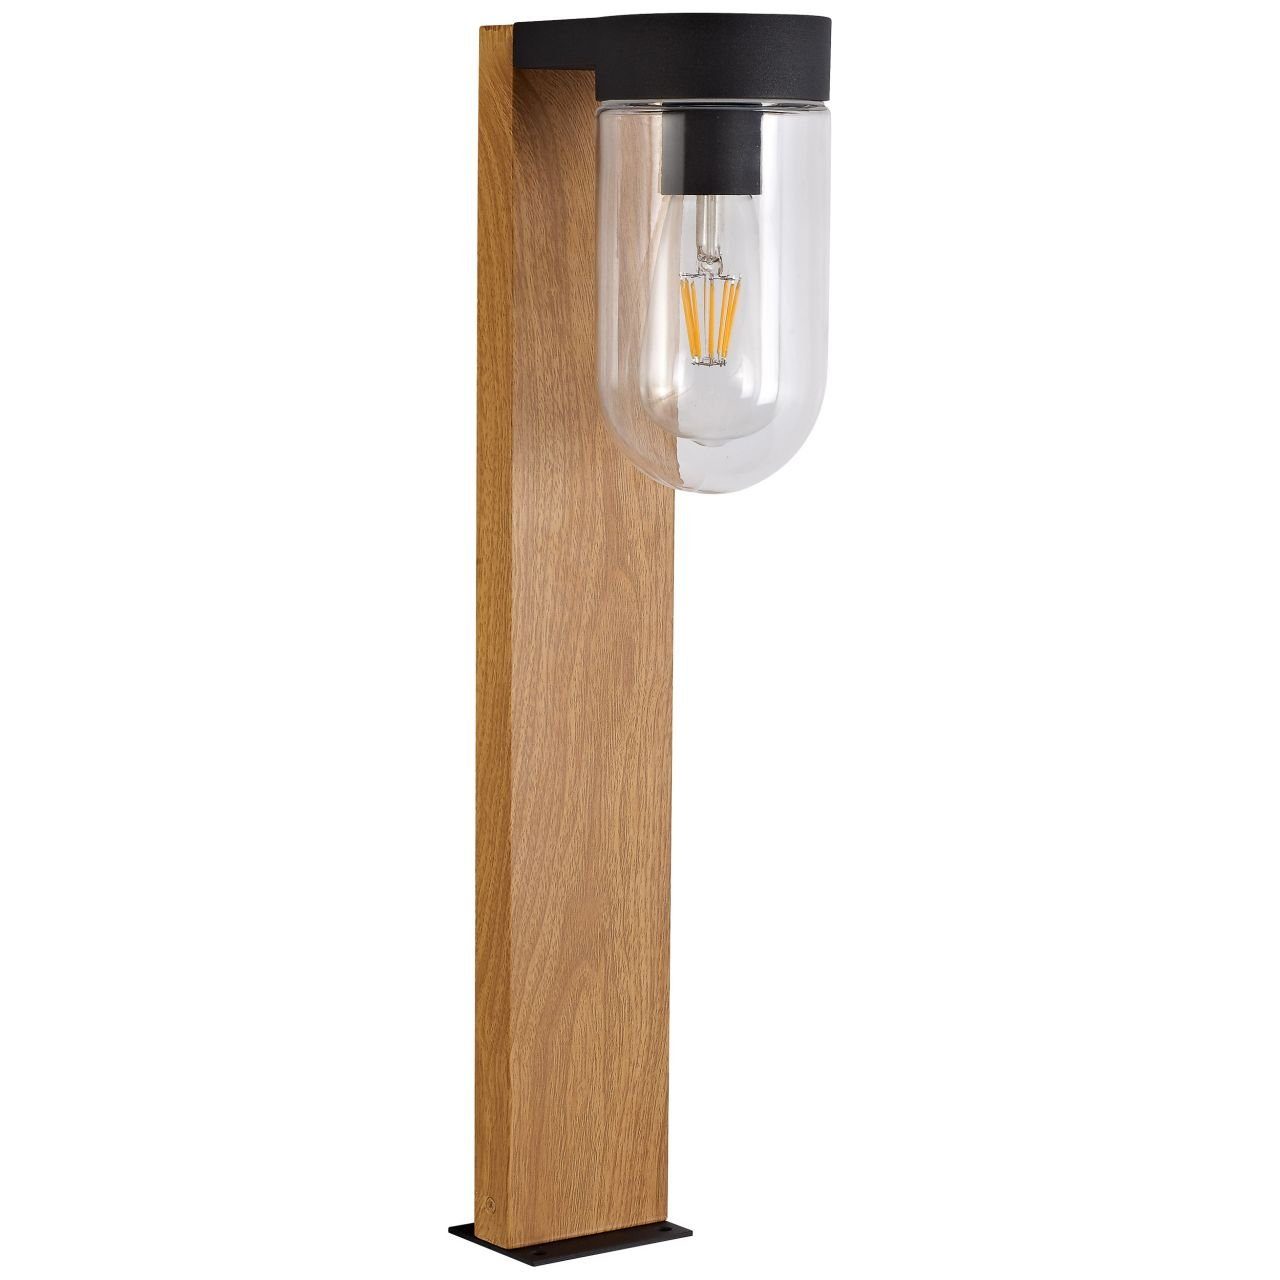 Brilliant Außen-Stehlampe Cabar, Lampe Cabar A60, E27 Außensockelleuchte dunkel/schwarz holz 1x 55cm